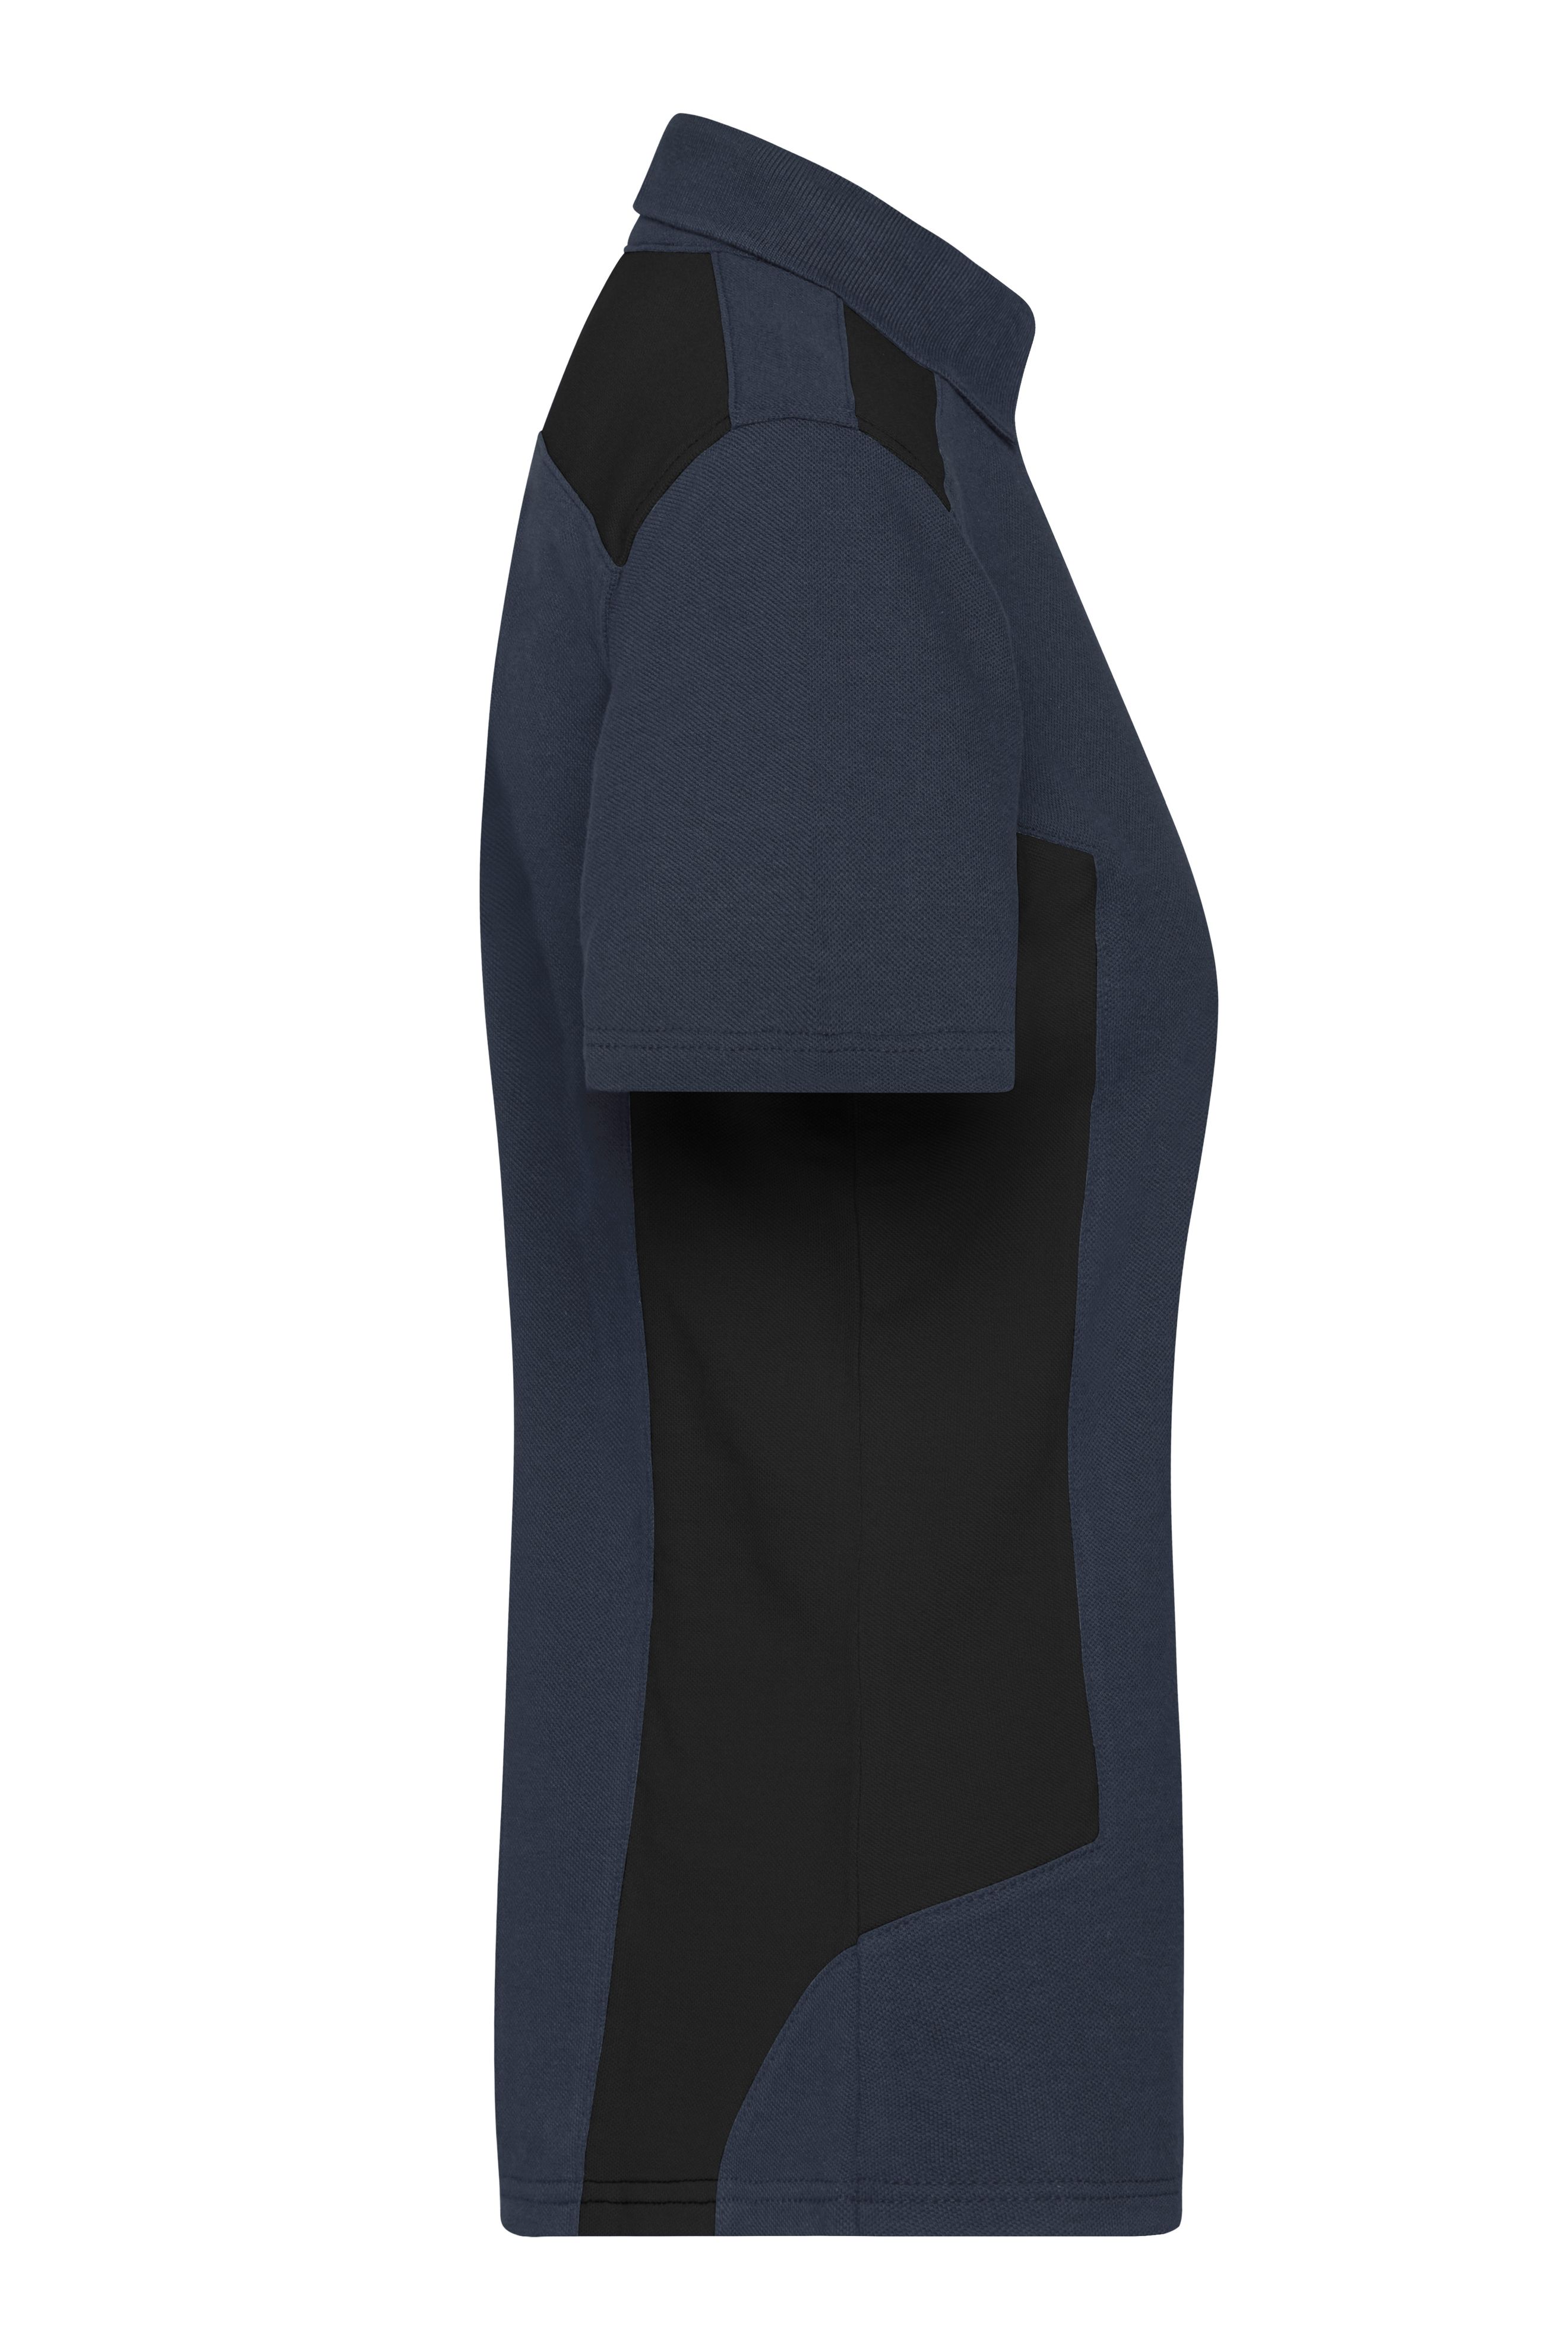 Ladies' Workwear Polo - STRONG - JN1825 Strapazierfähiges und pflegeleichtes Polo mit Kontrasteinsätzen